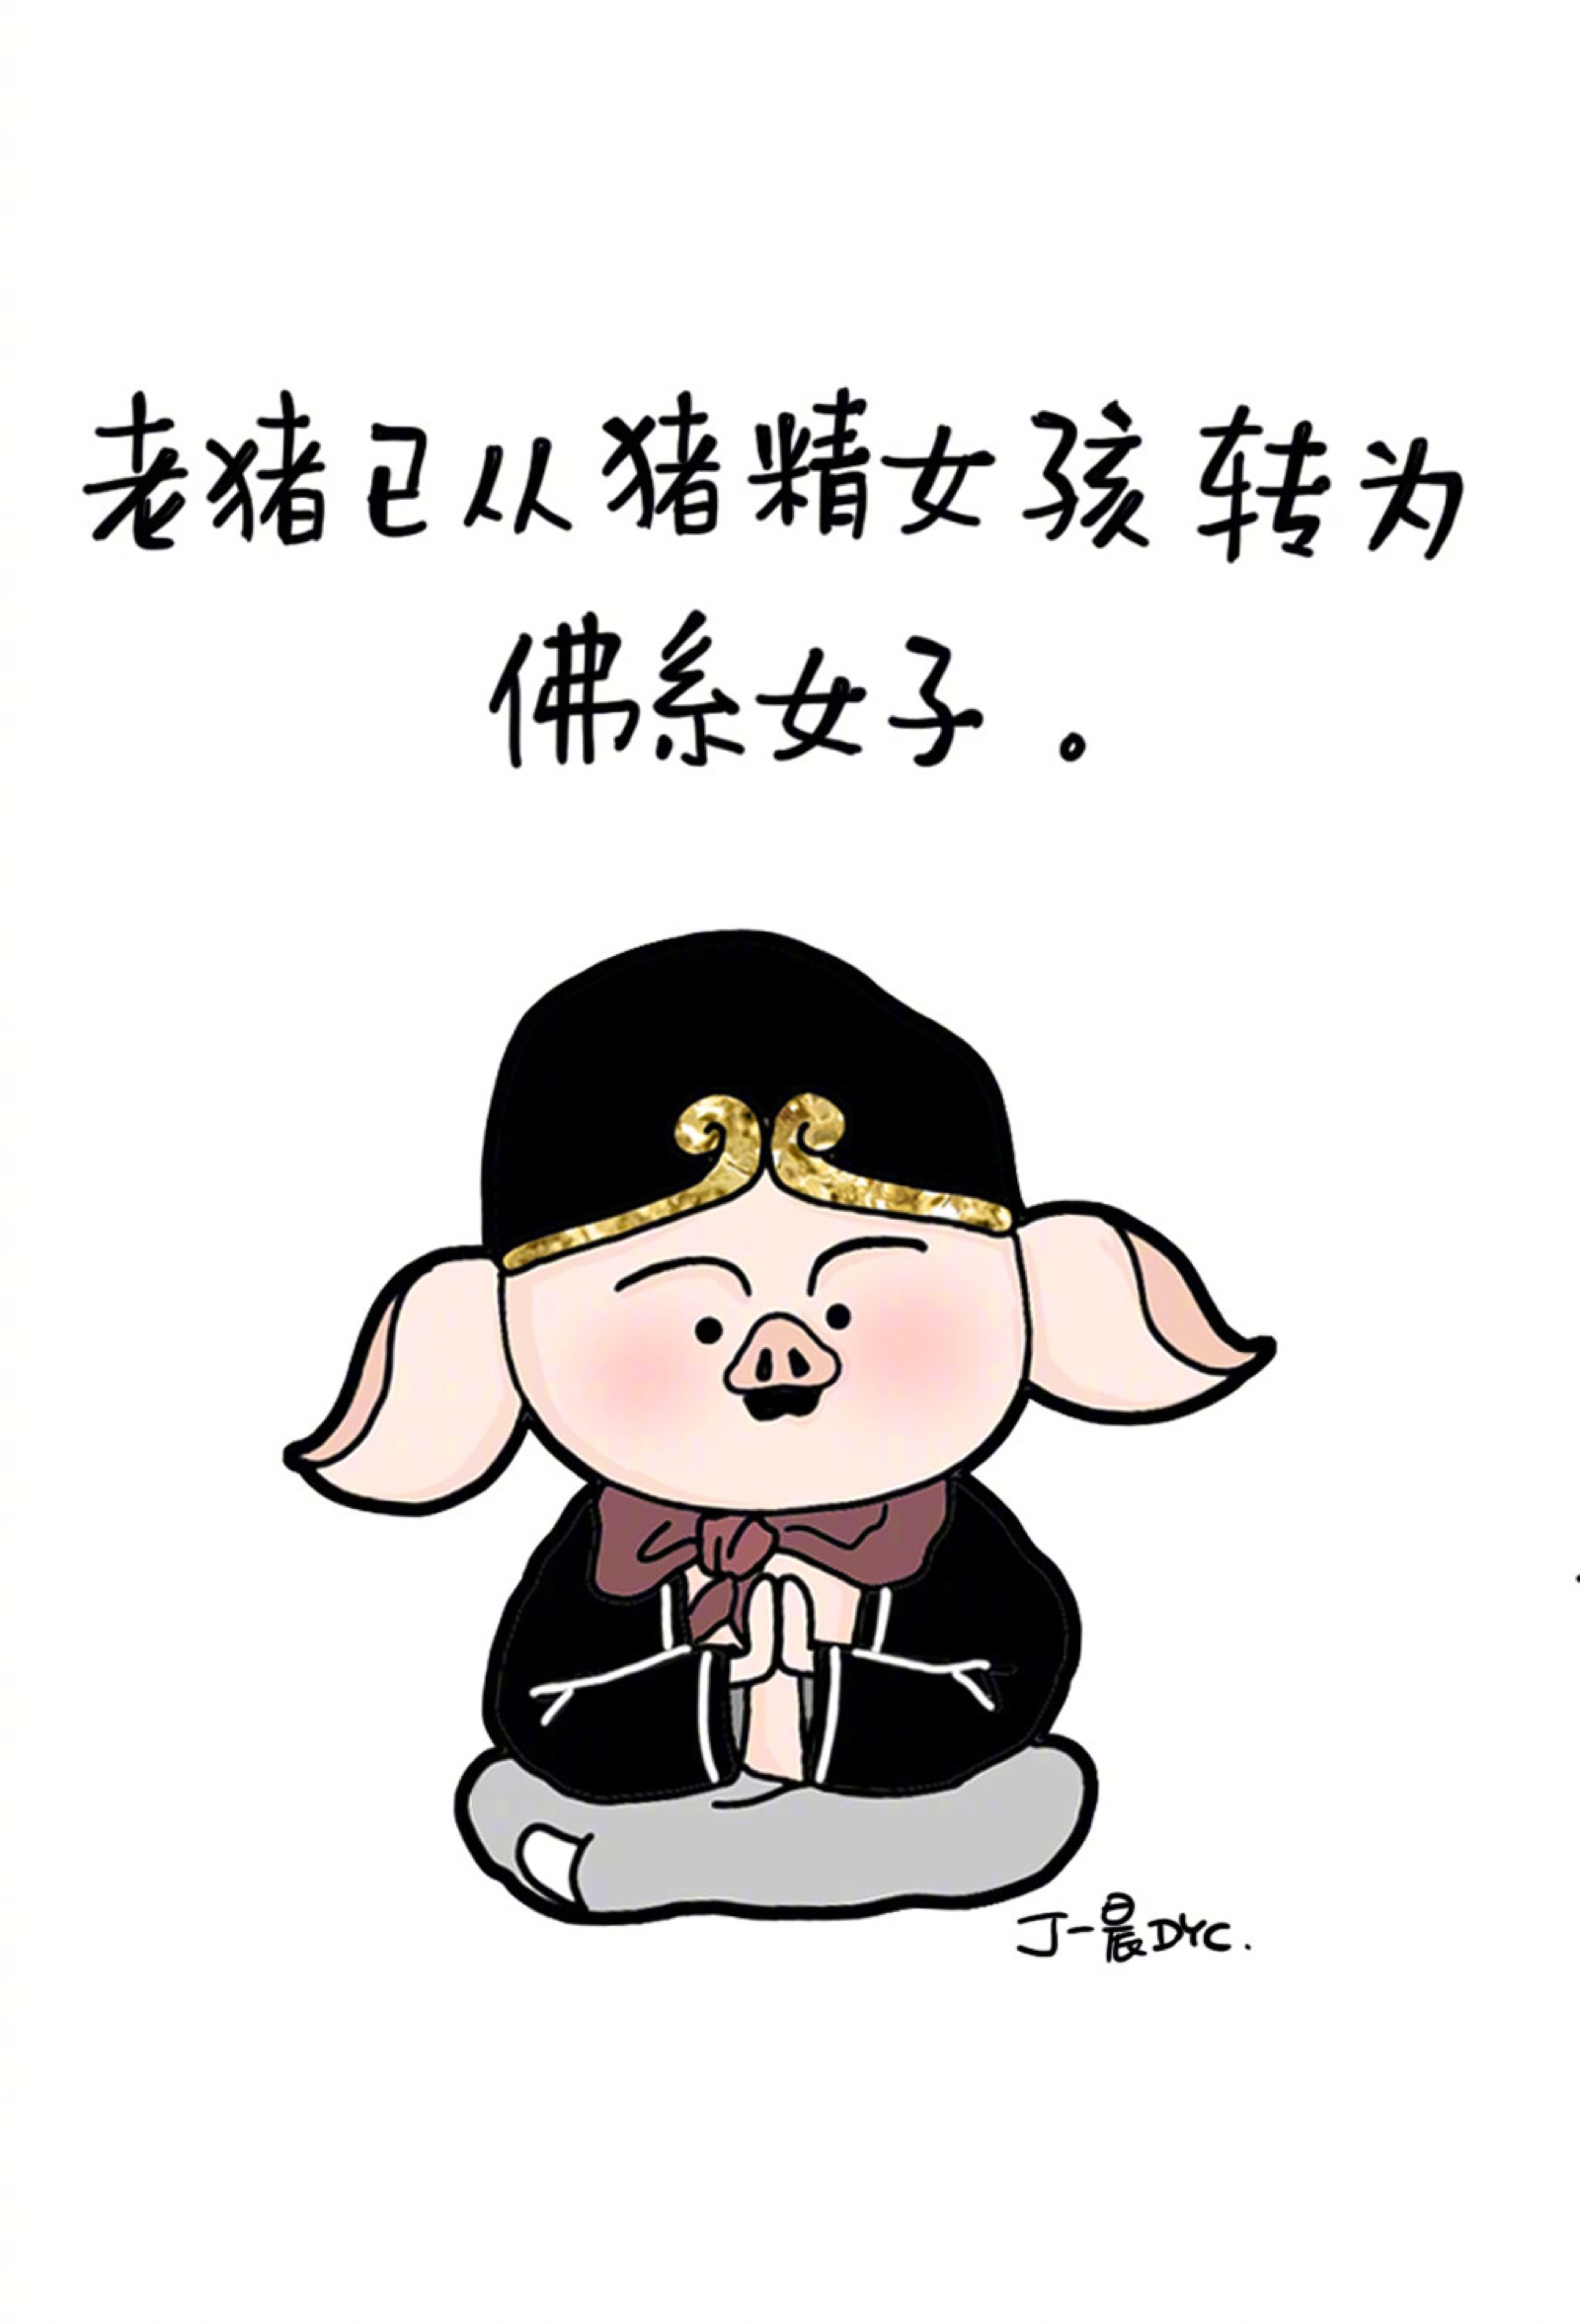 老猪已从猪猪女孩转为佛系女子搞笑卡通手机壁纸